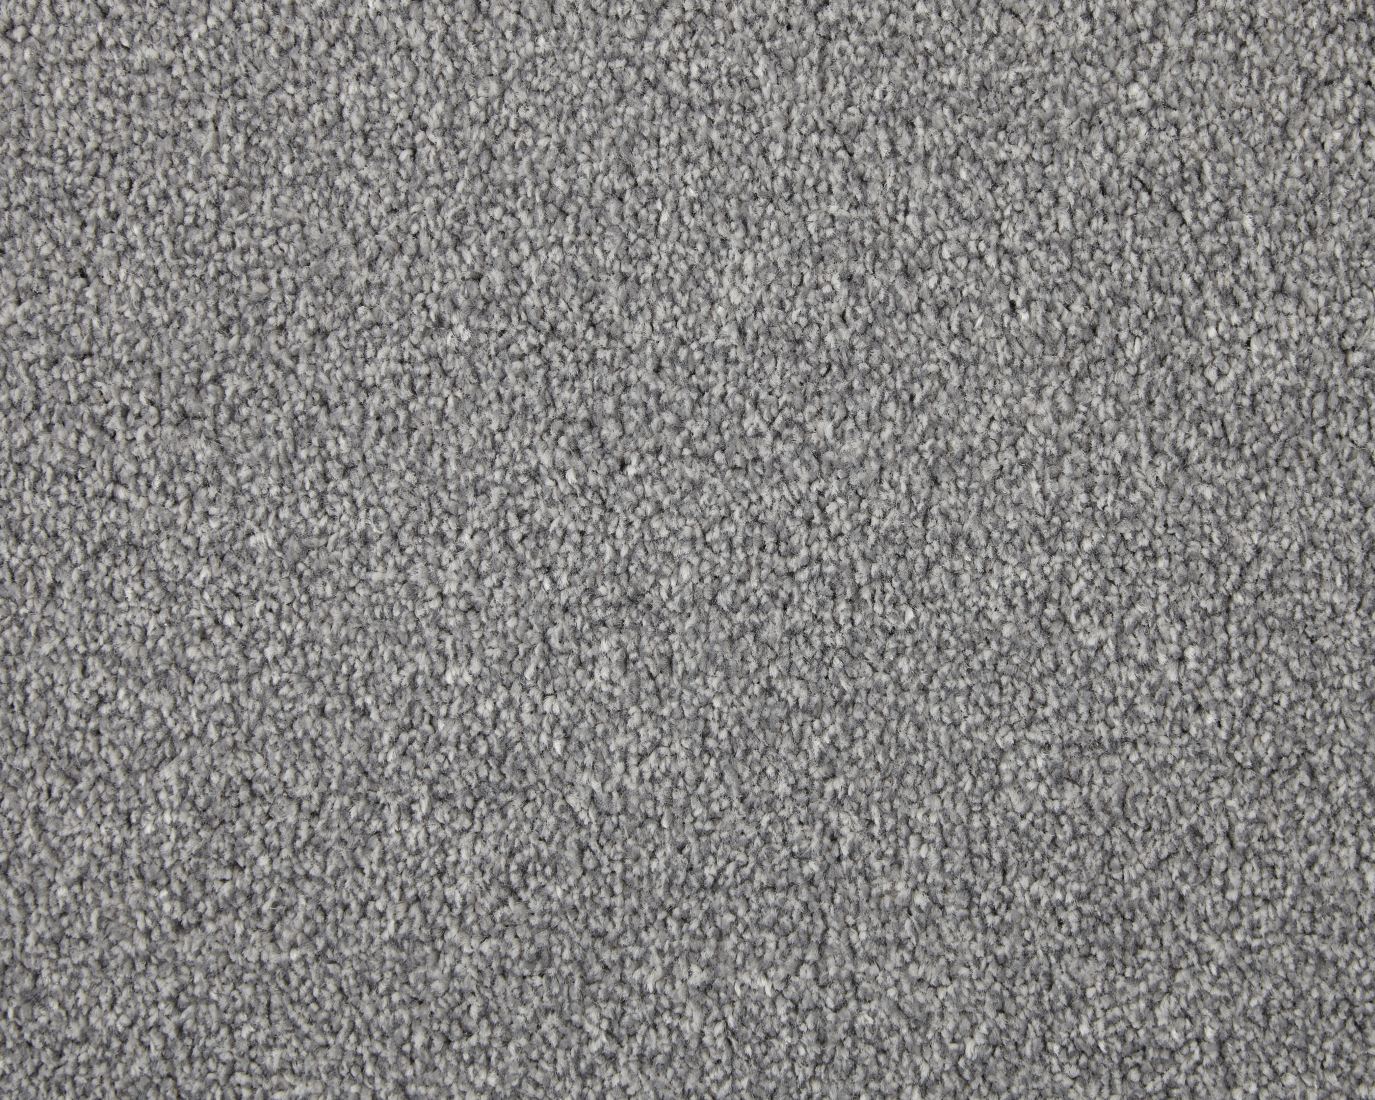 Abbey Twist Carpet - Baffin Grey